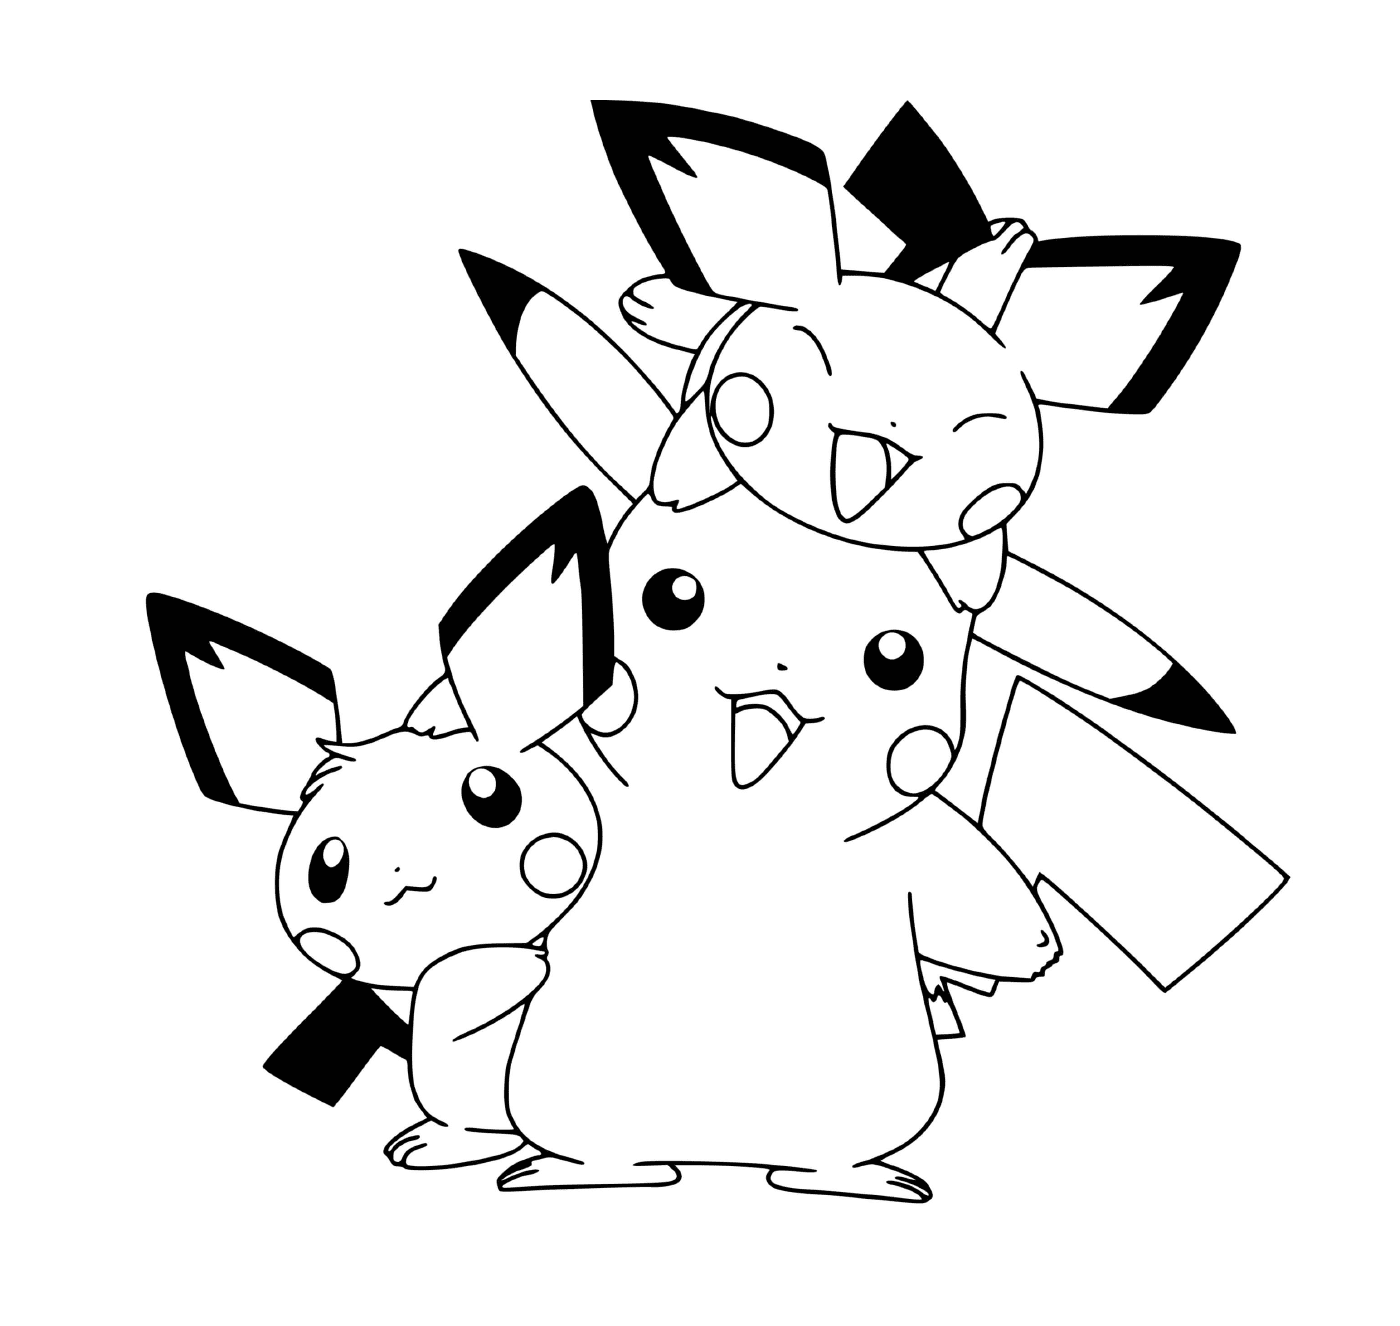   Pikachu mignon avec ses cousins Pikachus à colorier 